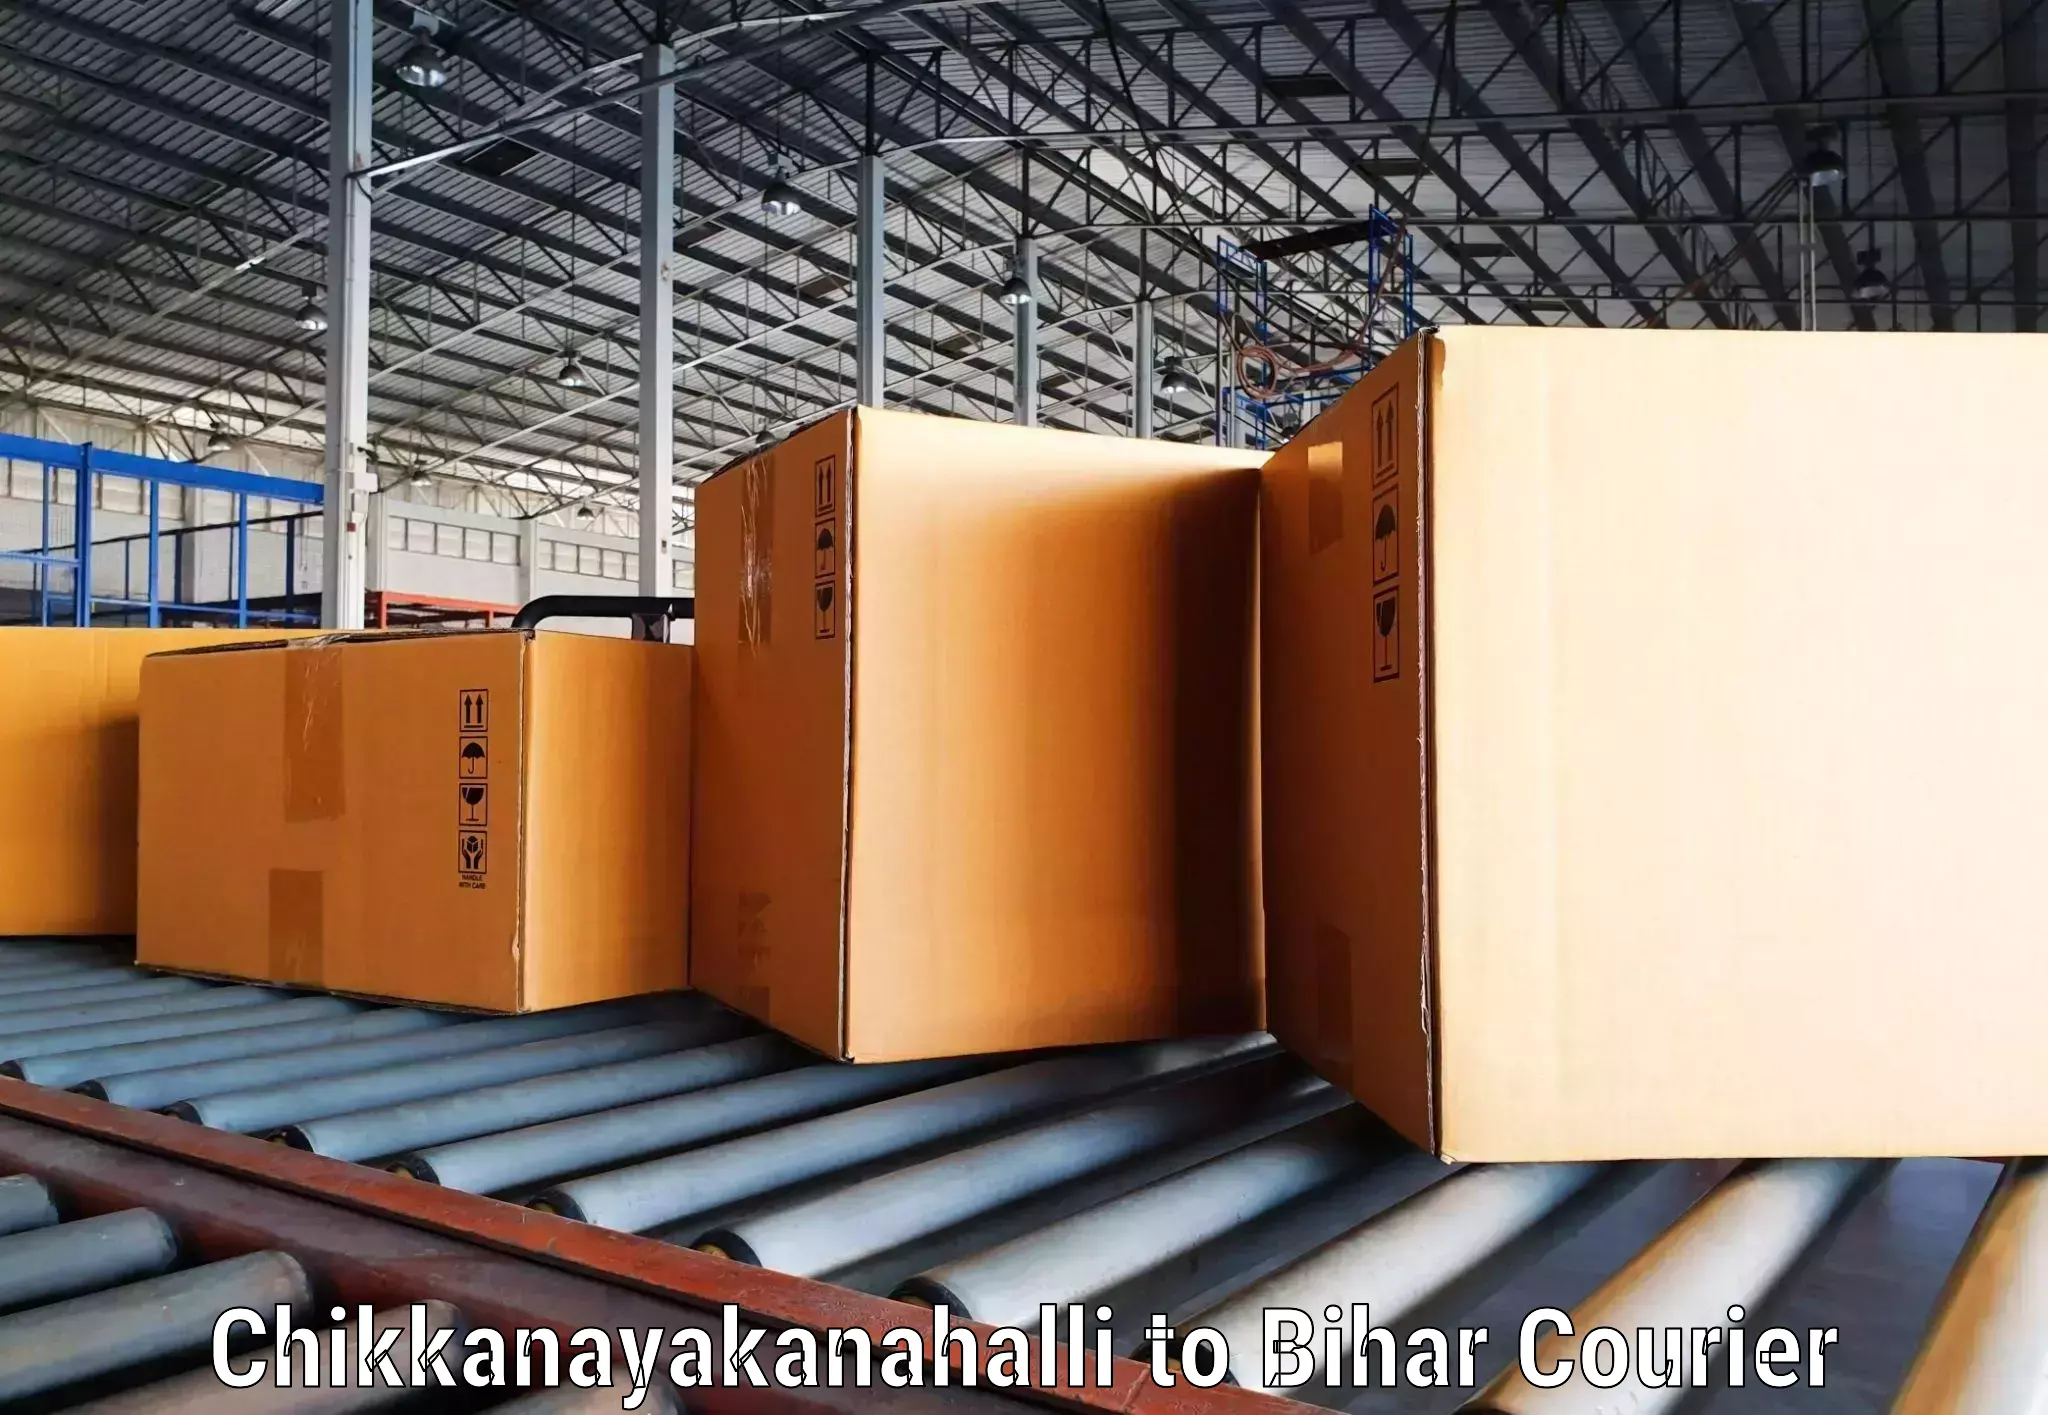 Large-scale shipping solutions Chikkanayakanahalli to Chakai